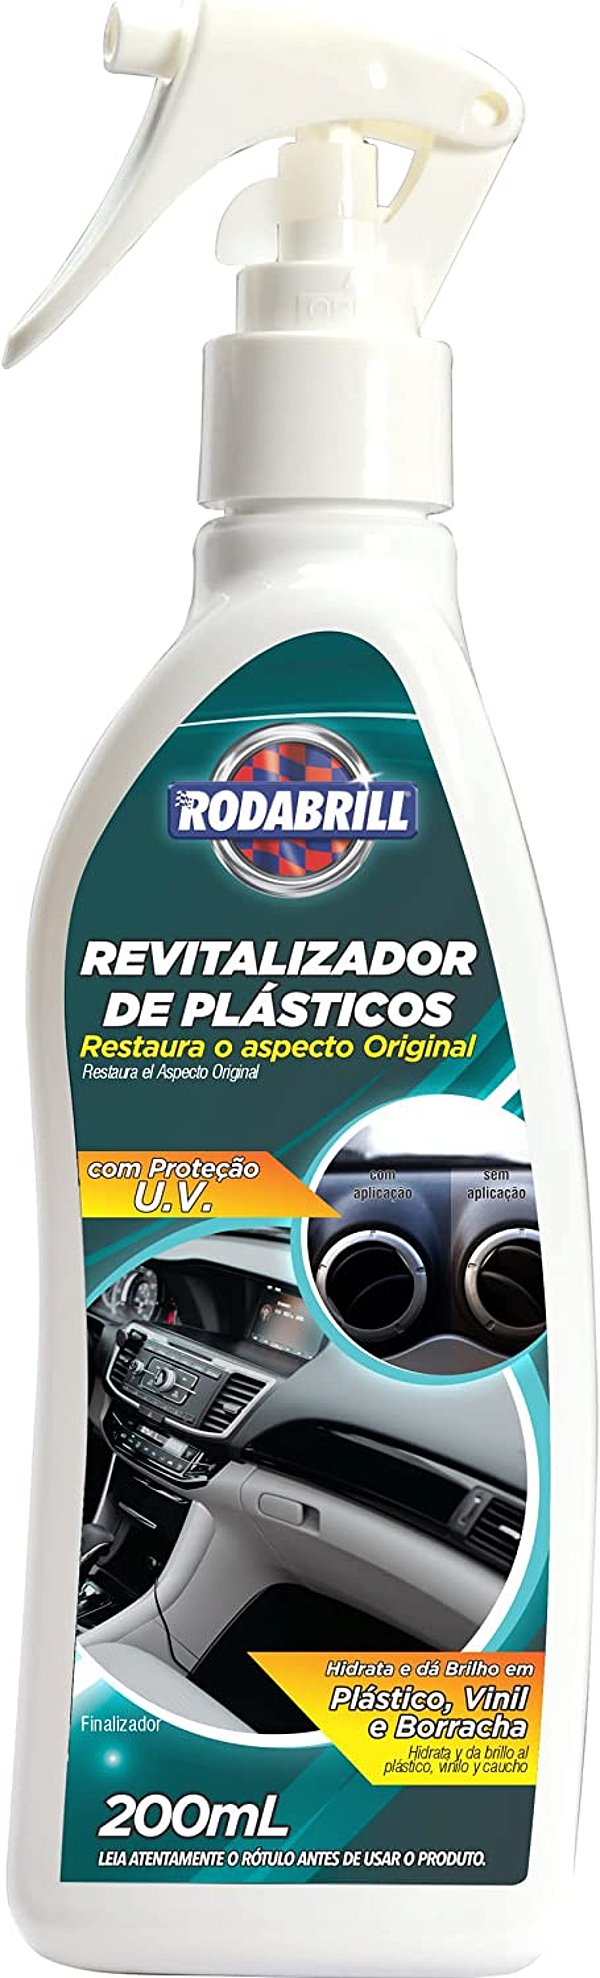 REVITALIZADOR DE PLÁSTICOS RODABRILL ( 12 X 200ML )